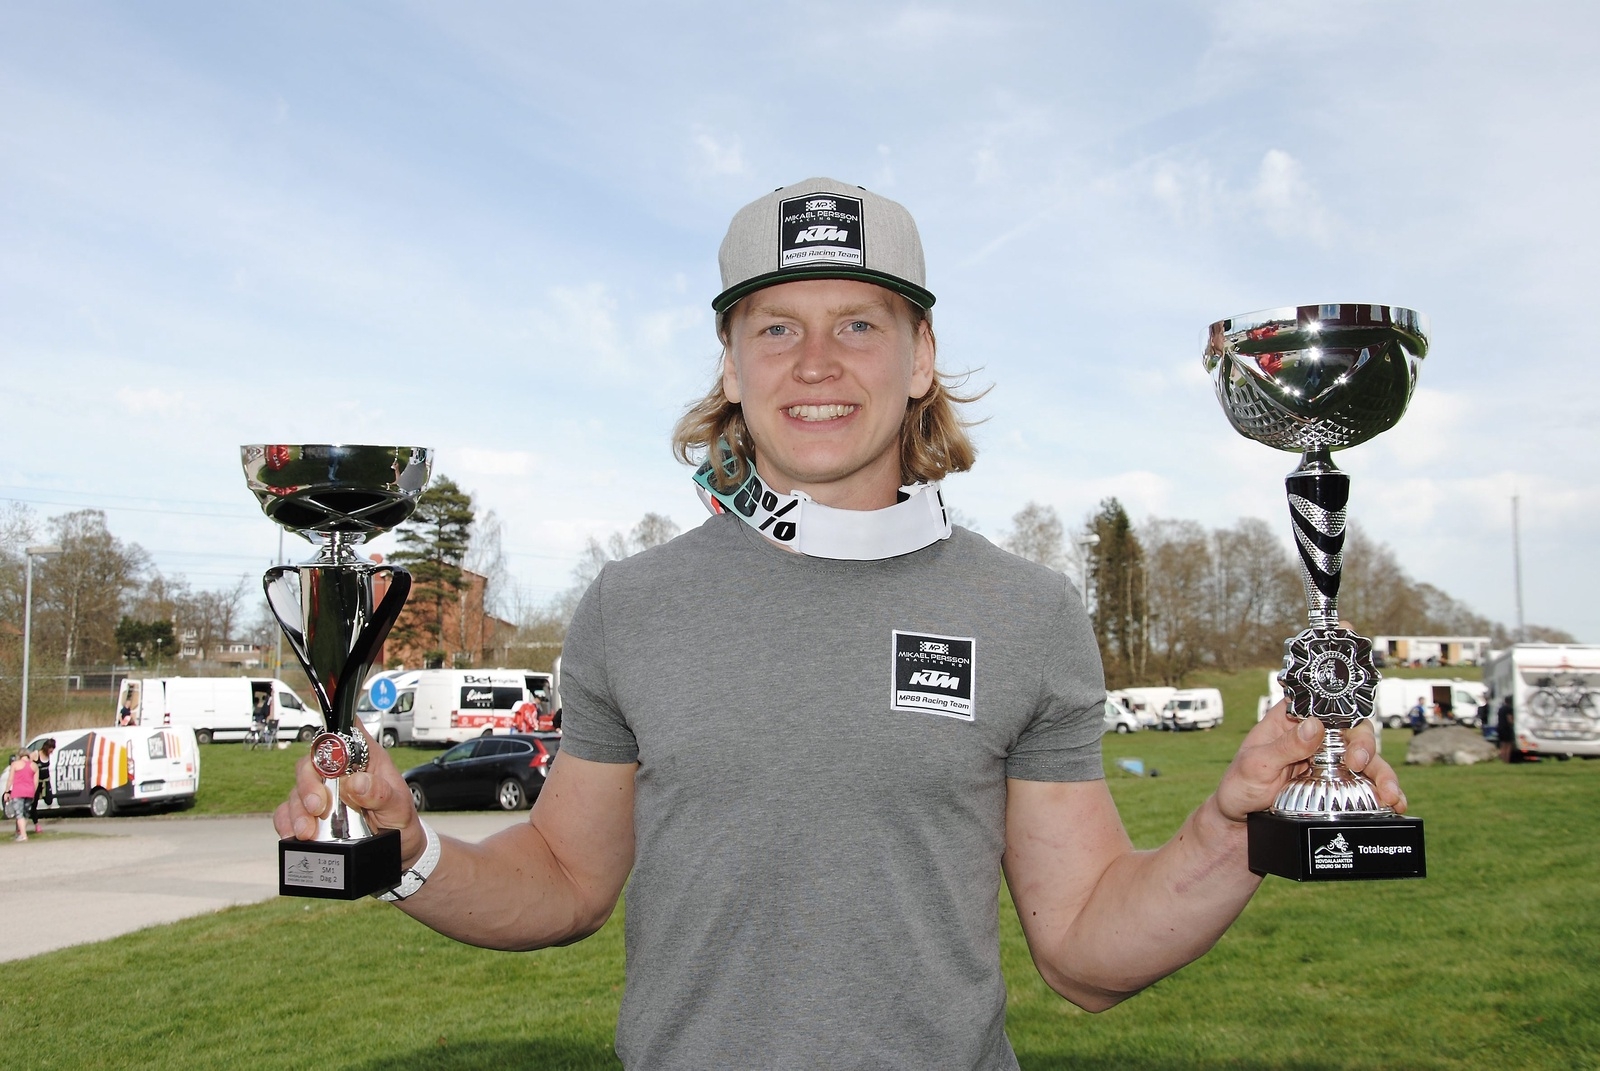 Micke Persson vann söndagens SM-deltävling och Hovdalajakten totalt. Foto: Marika Höghäll